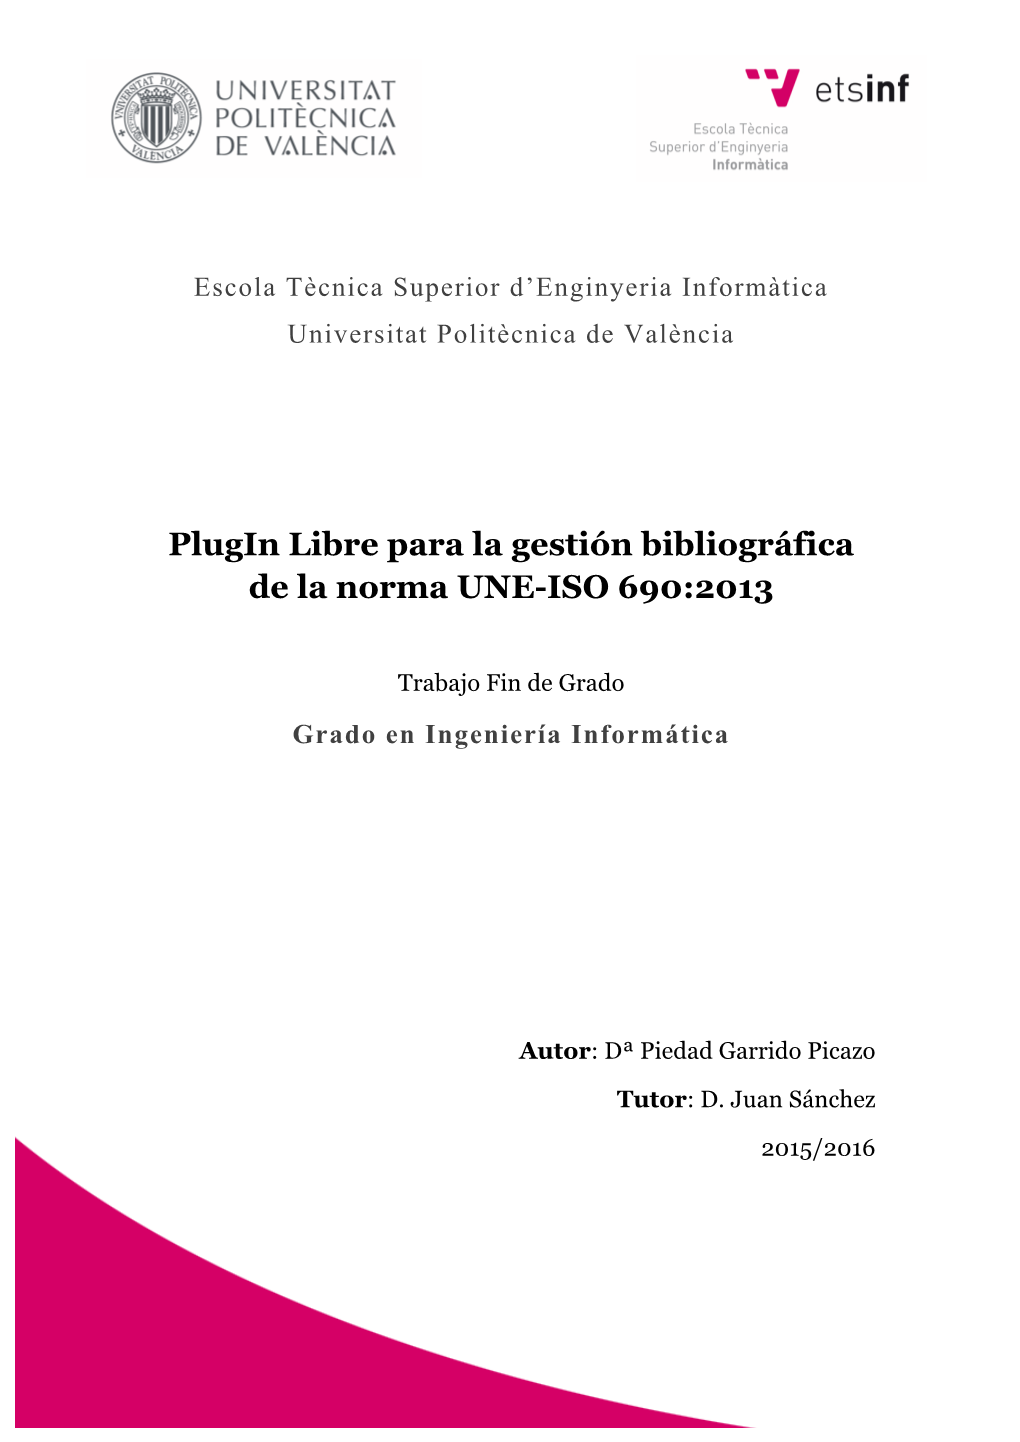 Plugin Libre Para La Gestión Bibliográfica De La Norma UNE-ISO 690:2013